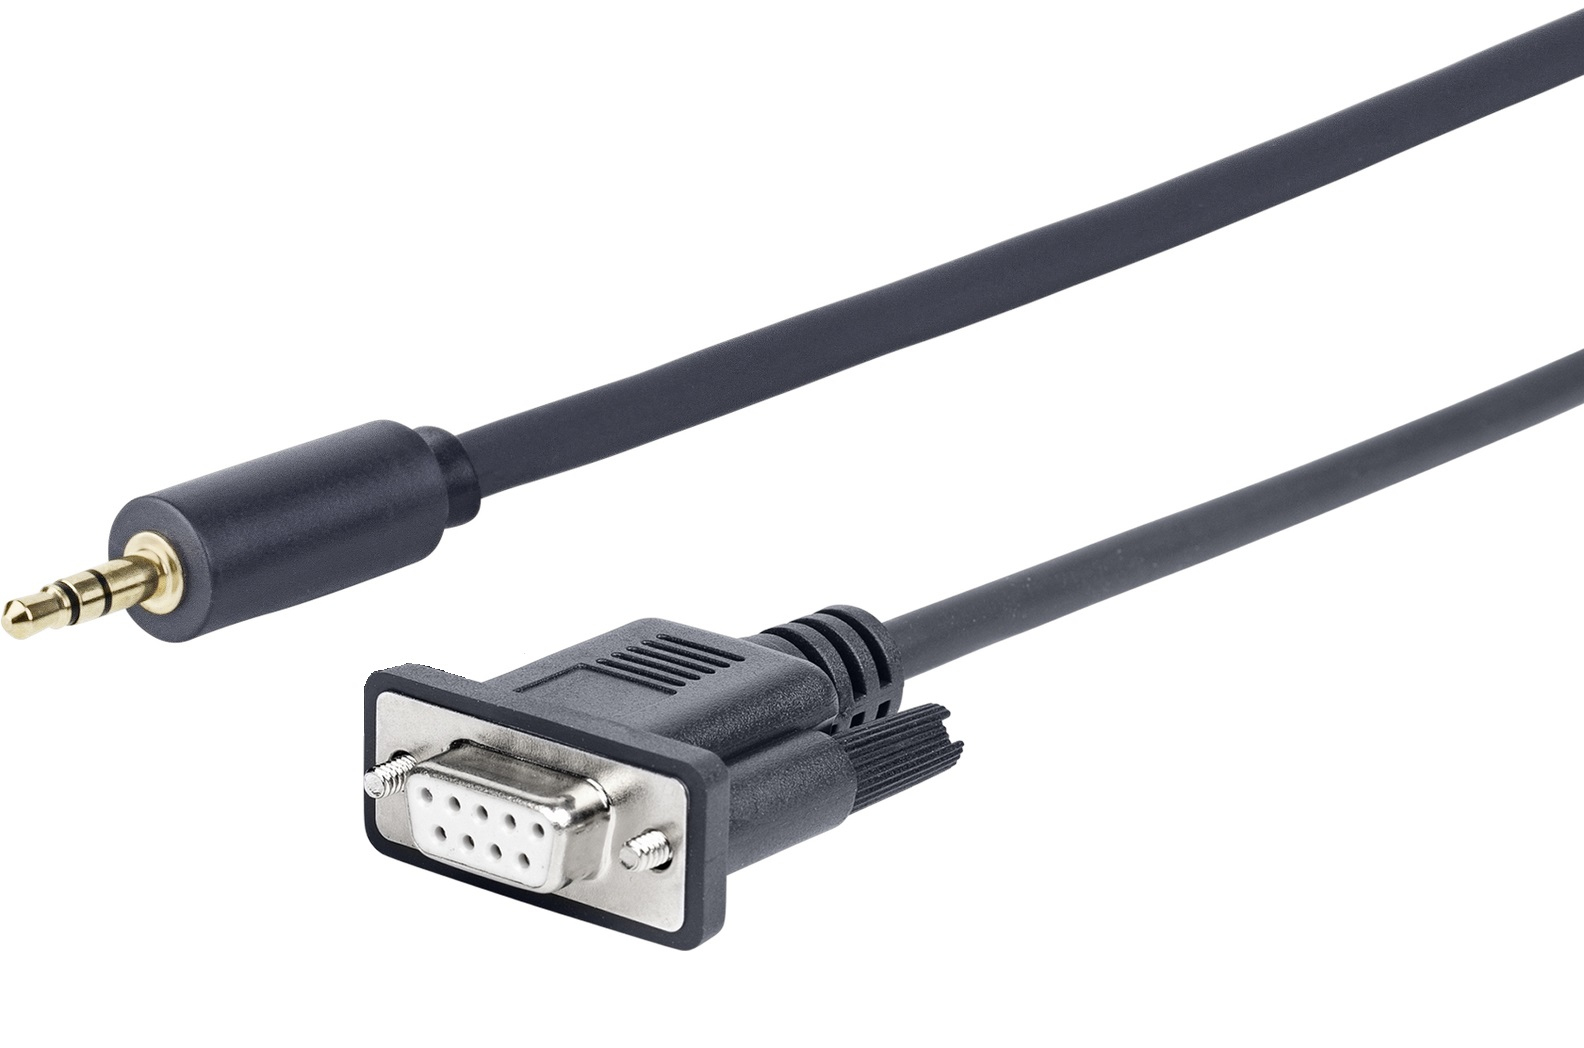 Vivolink 25m 3.5mm - D-Sub 9 pin serial cable Black D-Sub (DB-9)